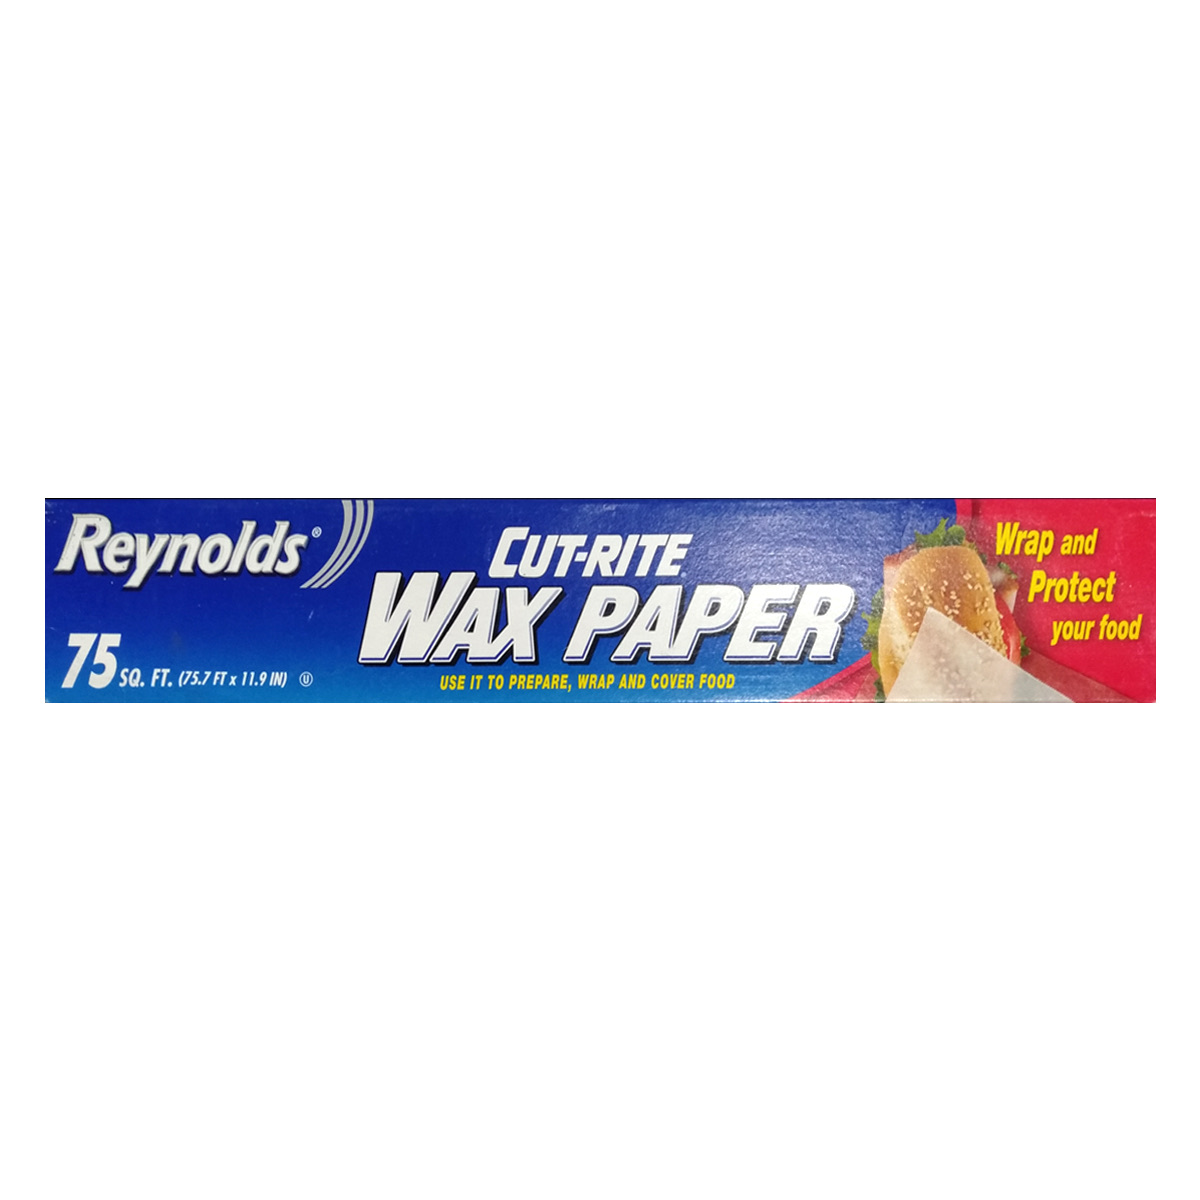 Reynolds Cut-Rite Wax Paper 23M